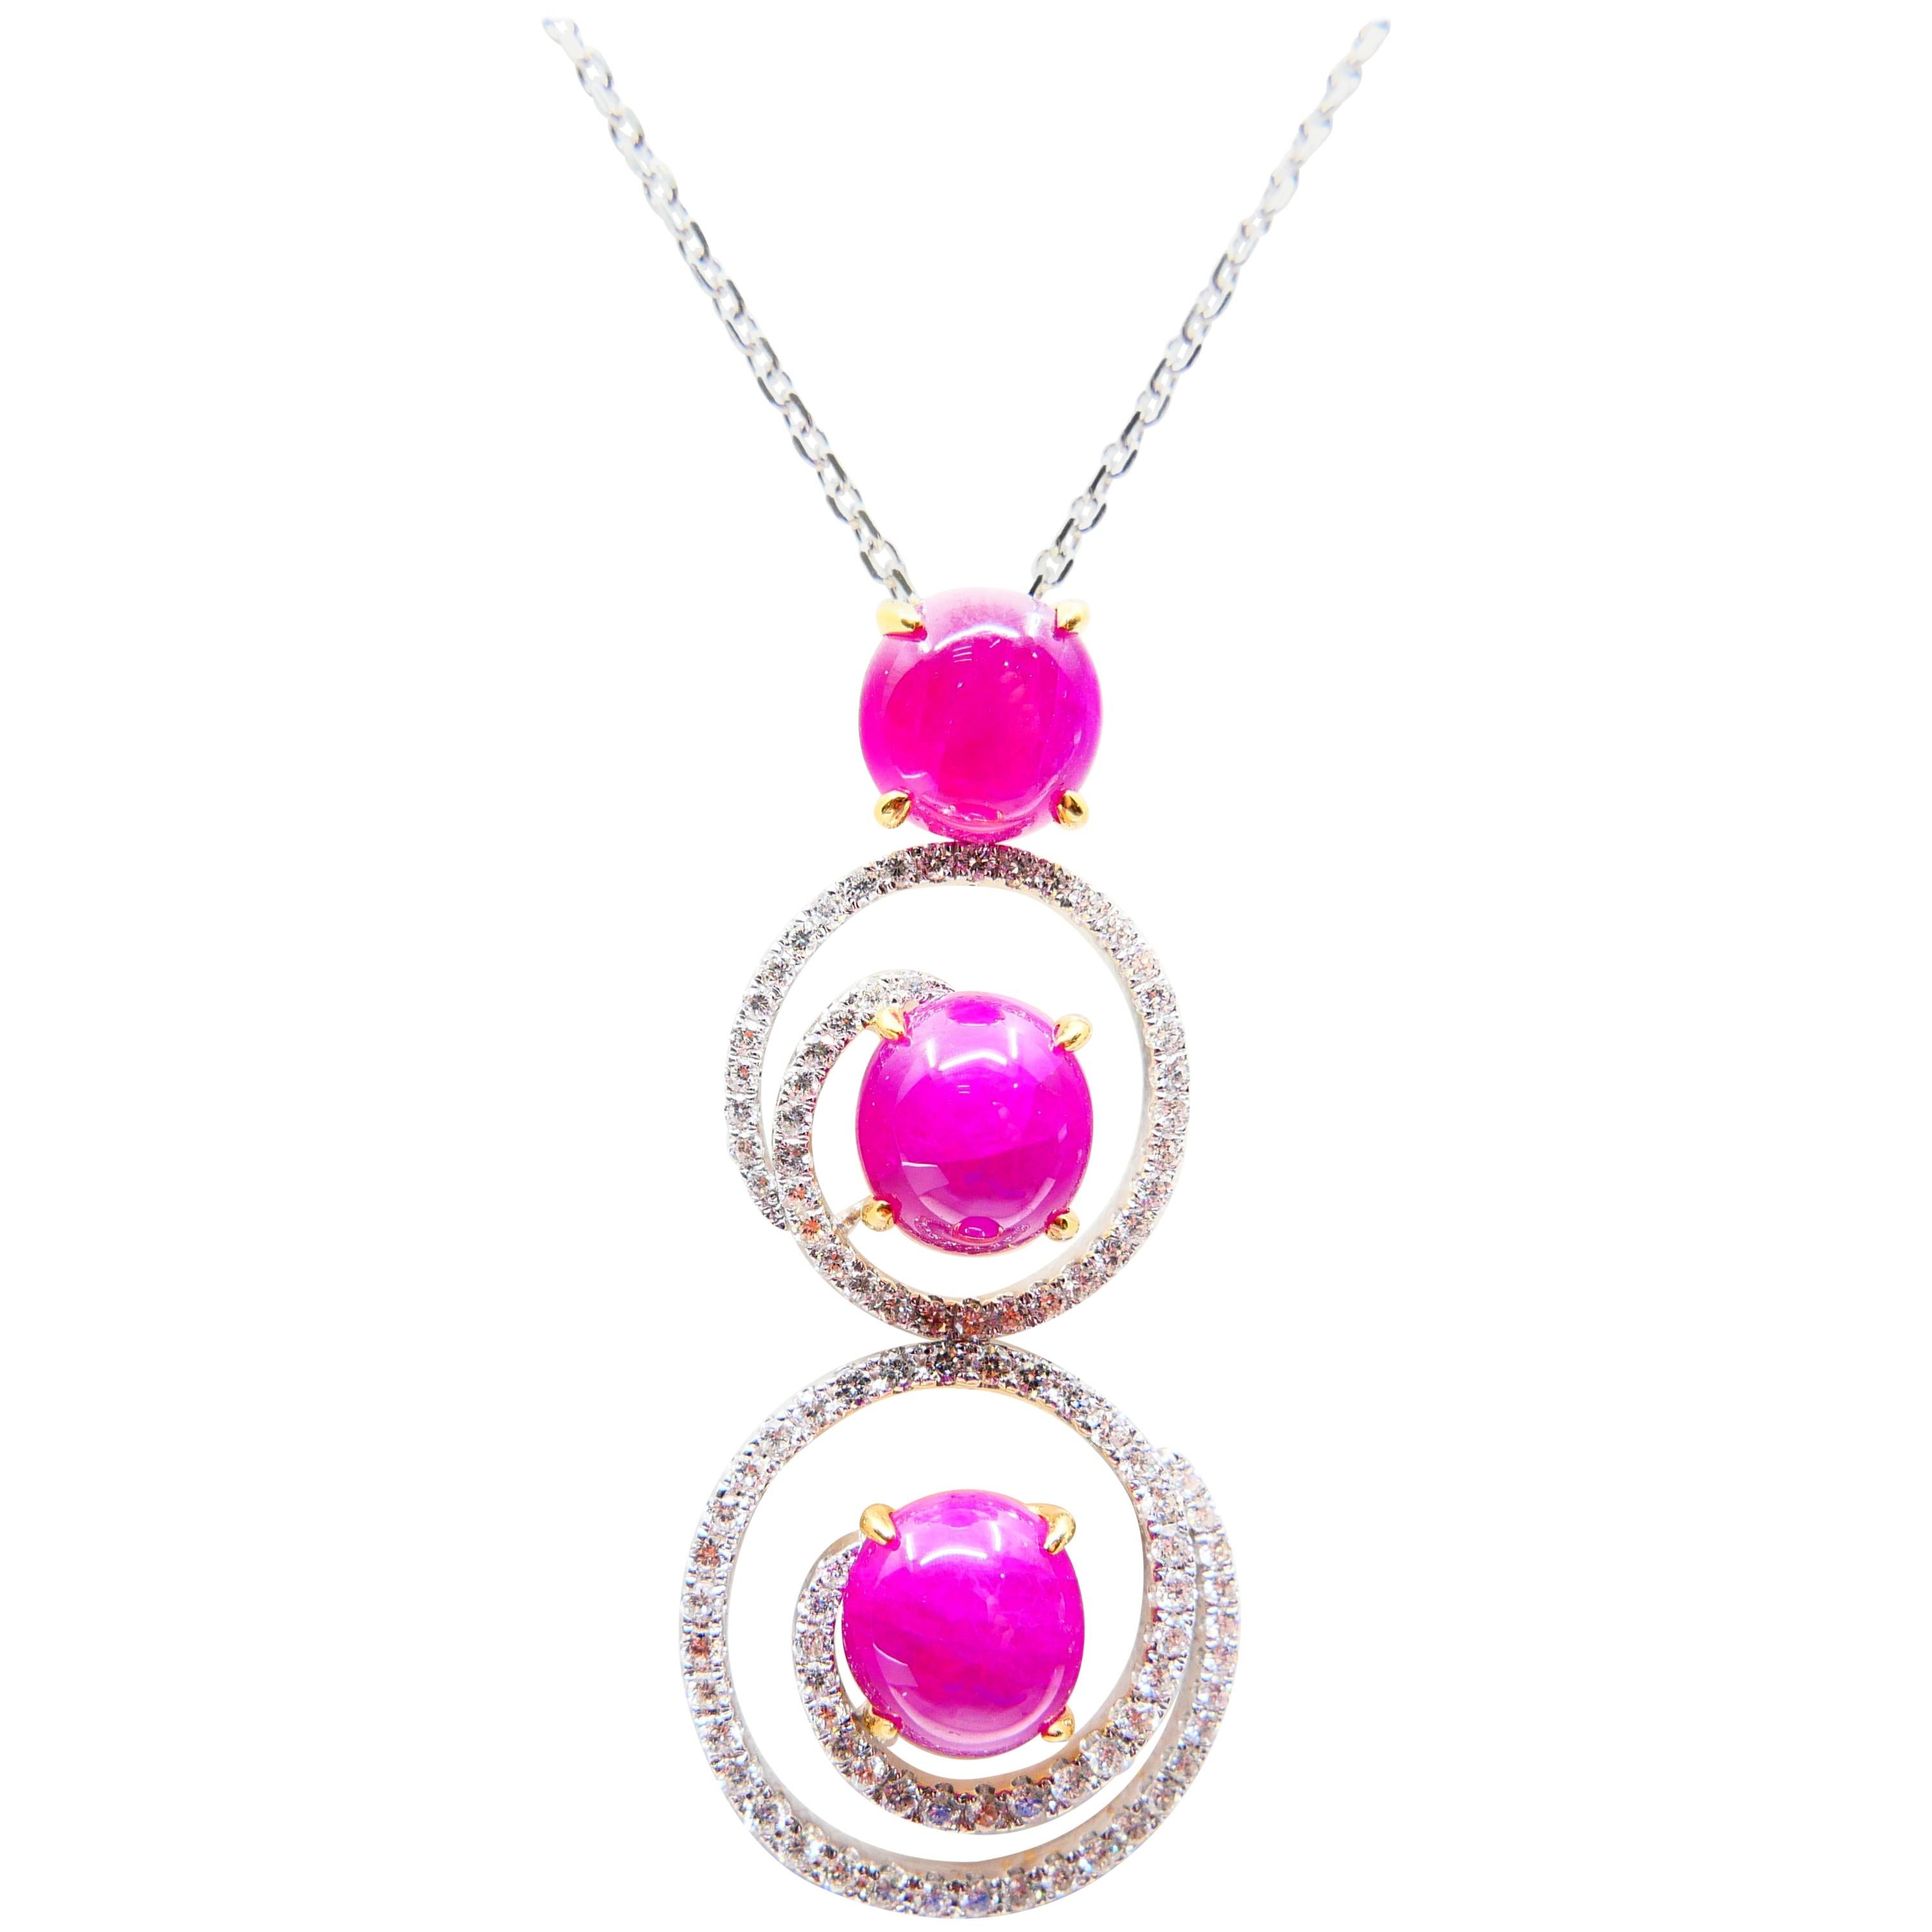 Burma Ruby 7.05 Carat and Diamond Pendant Drop Necklace, Elegant Design 3